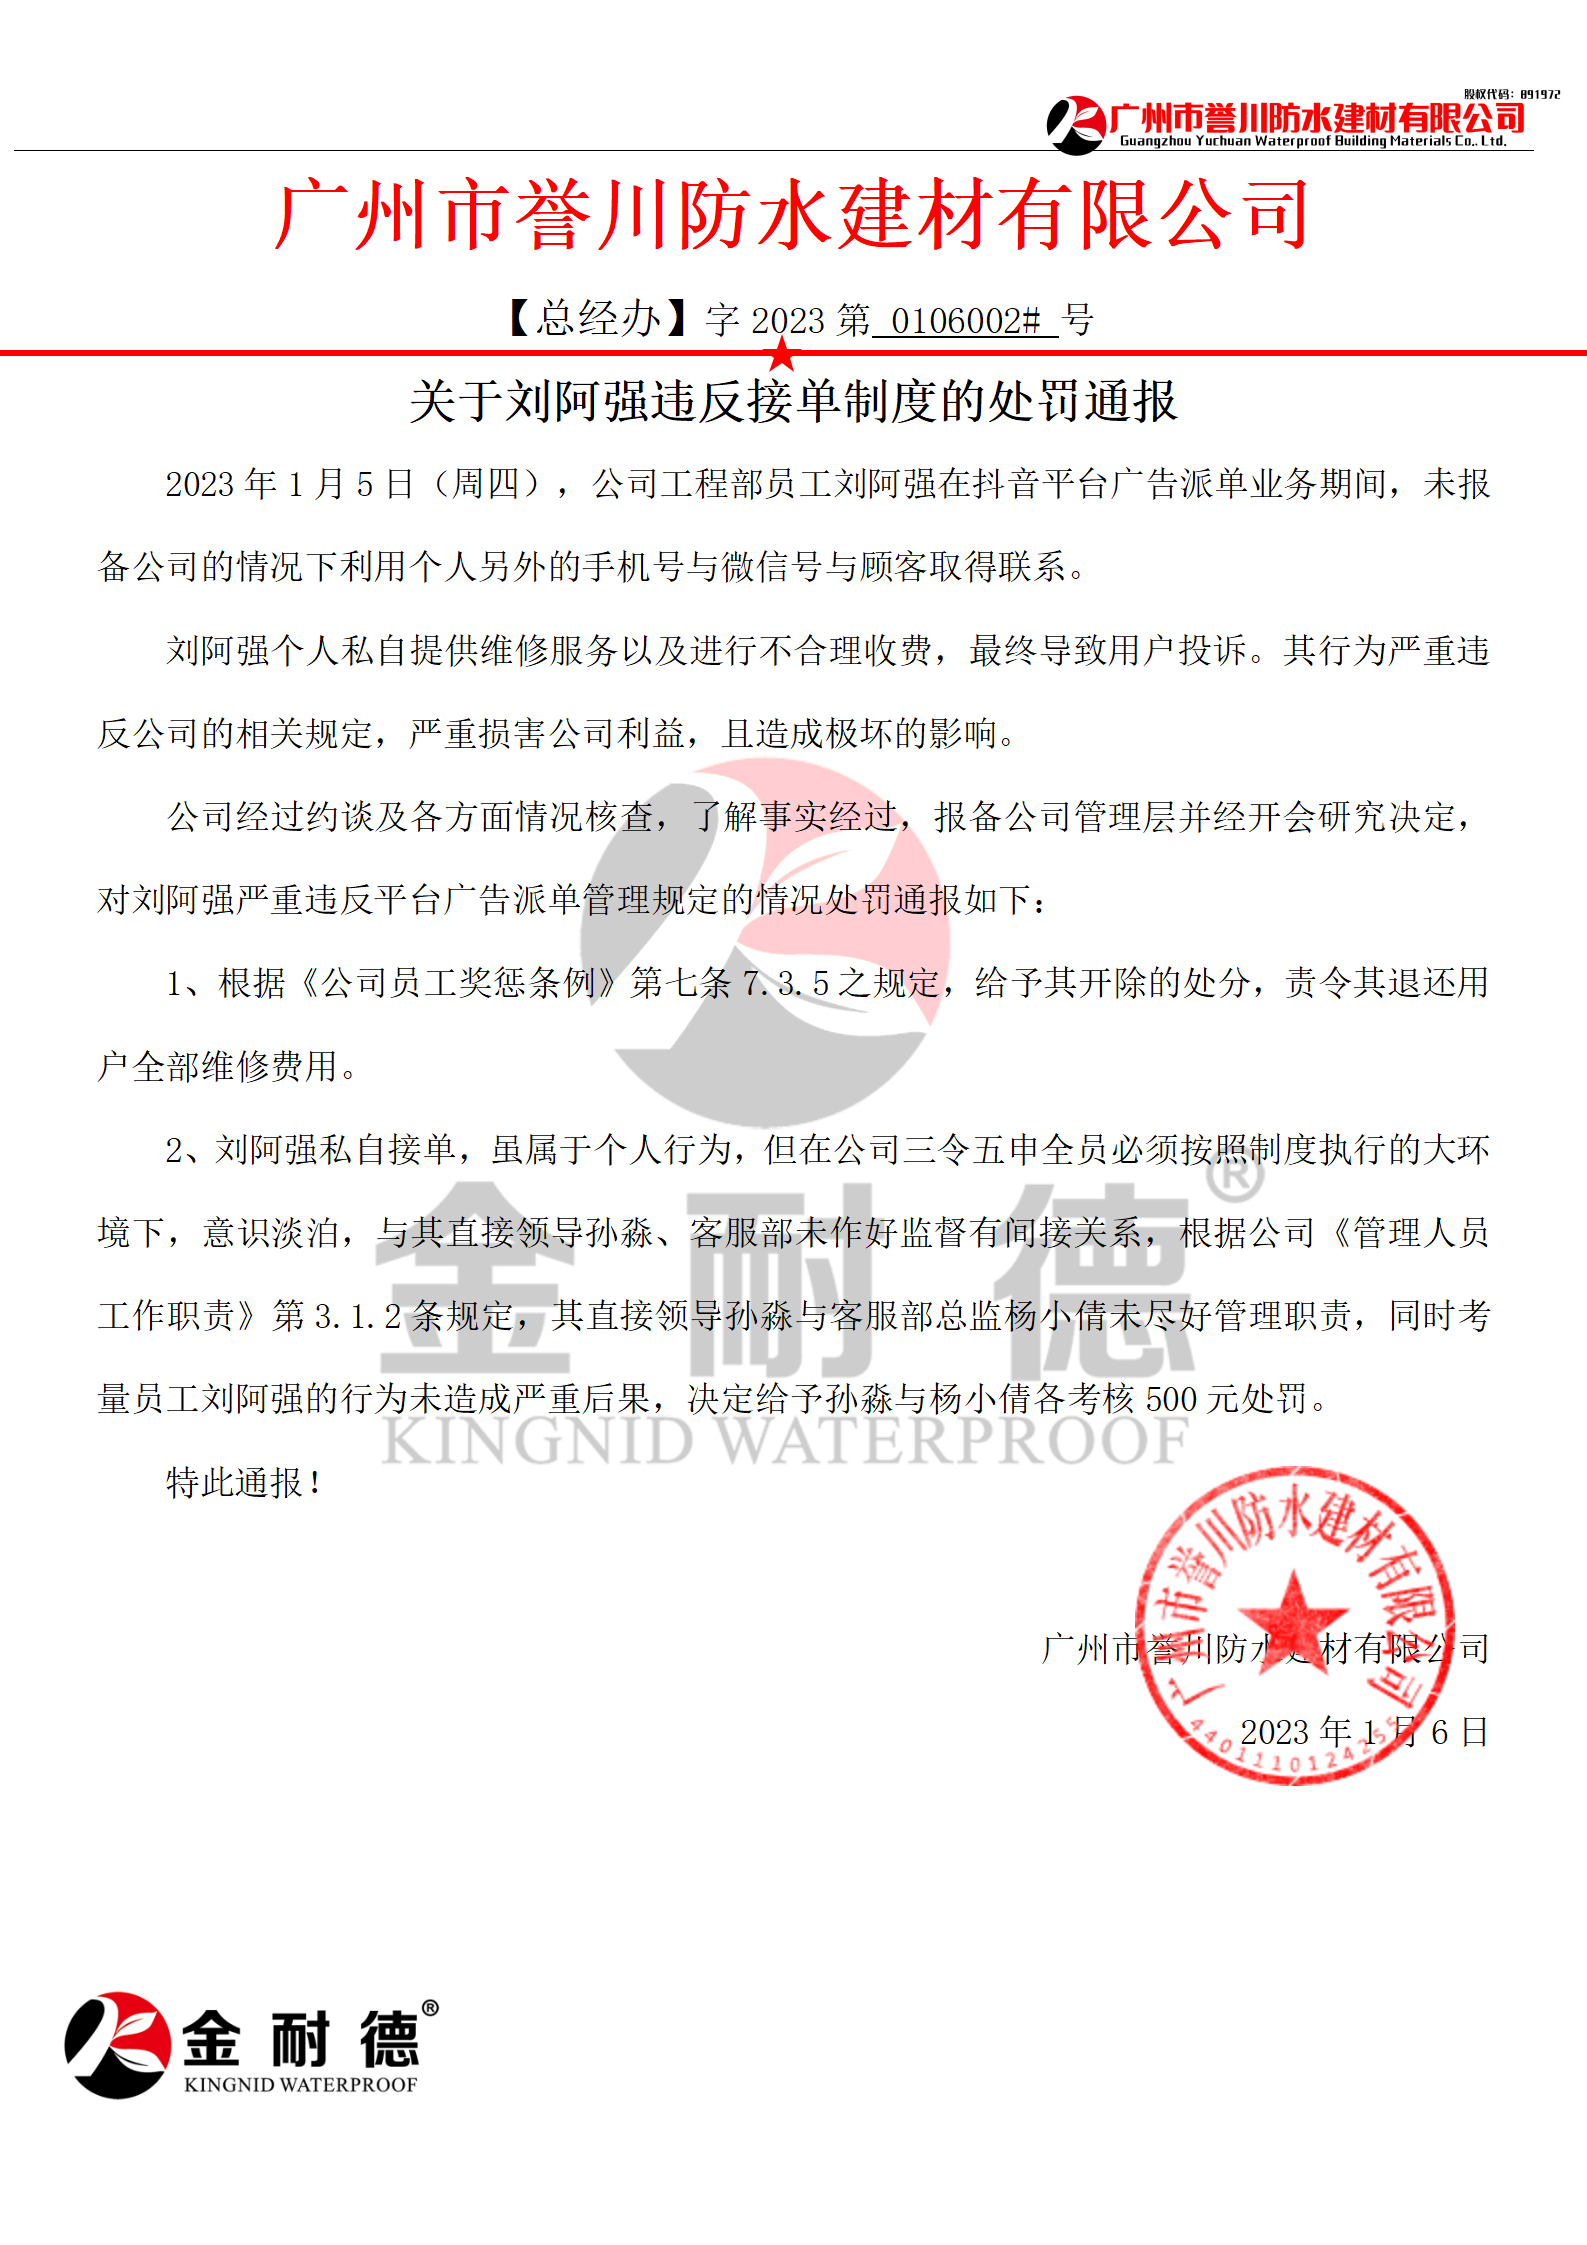 廣州市譽川防水材料有限公司關于劉阿強違反接單制度的處罰通報